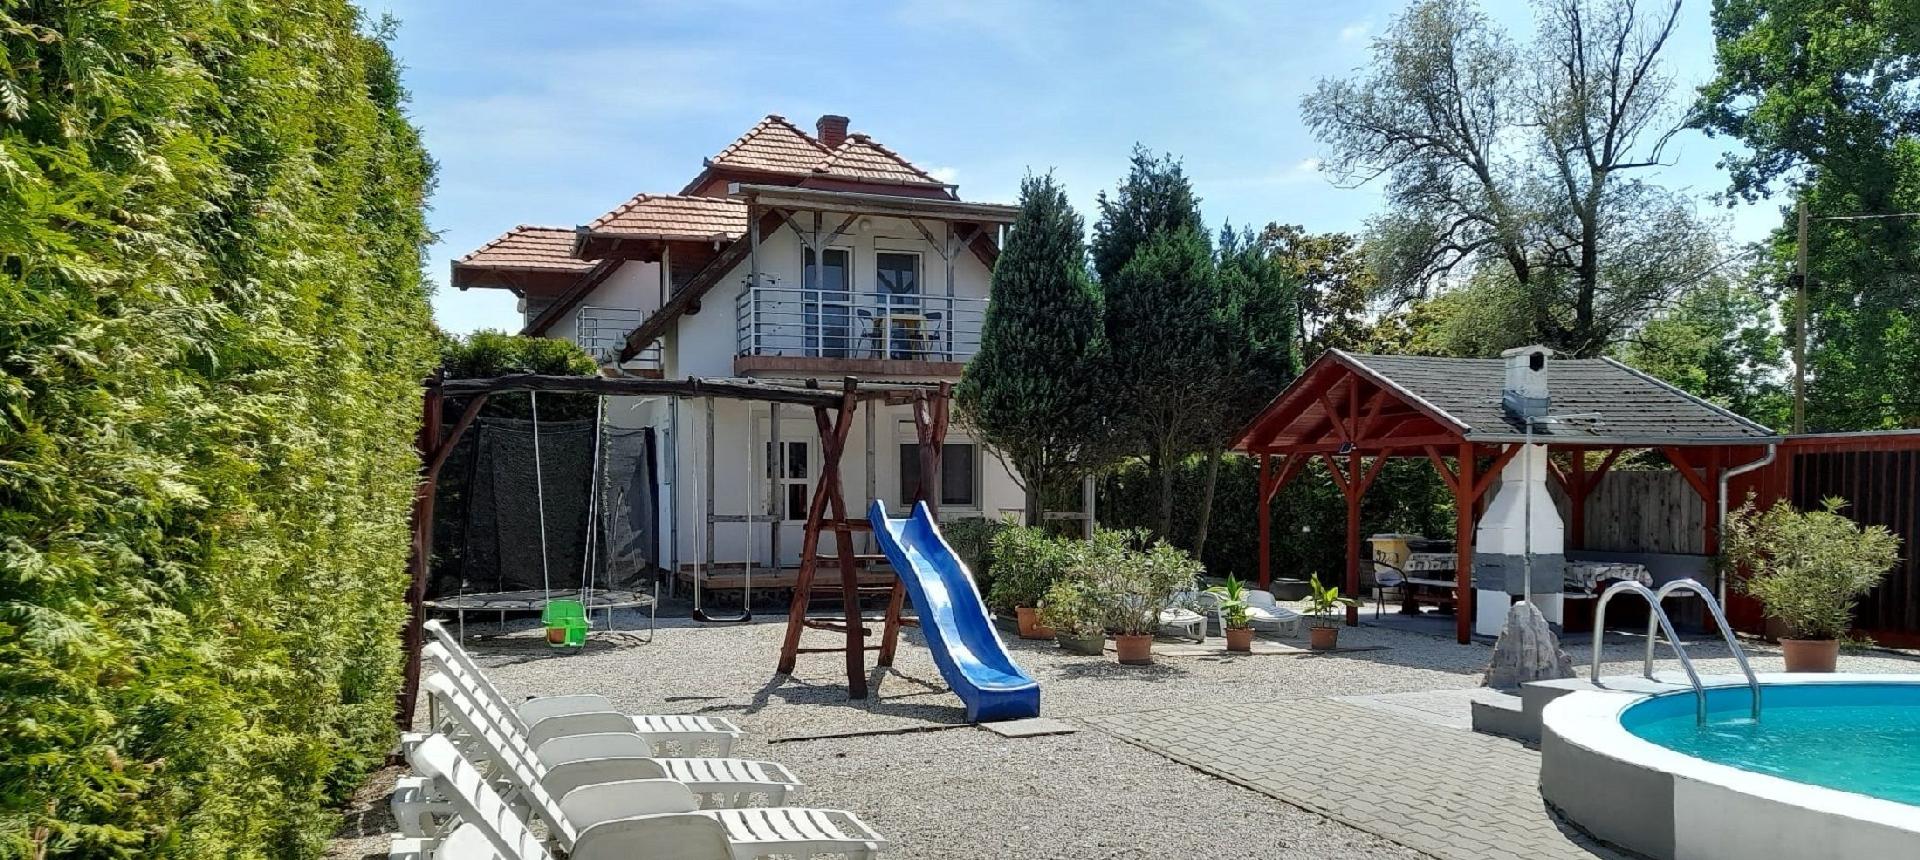 Ferienhaus mit Pool, Spielplatz, WLAN, direkt am S  am Balaton Plattensee